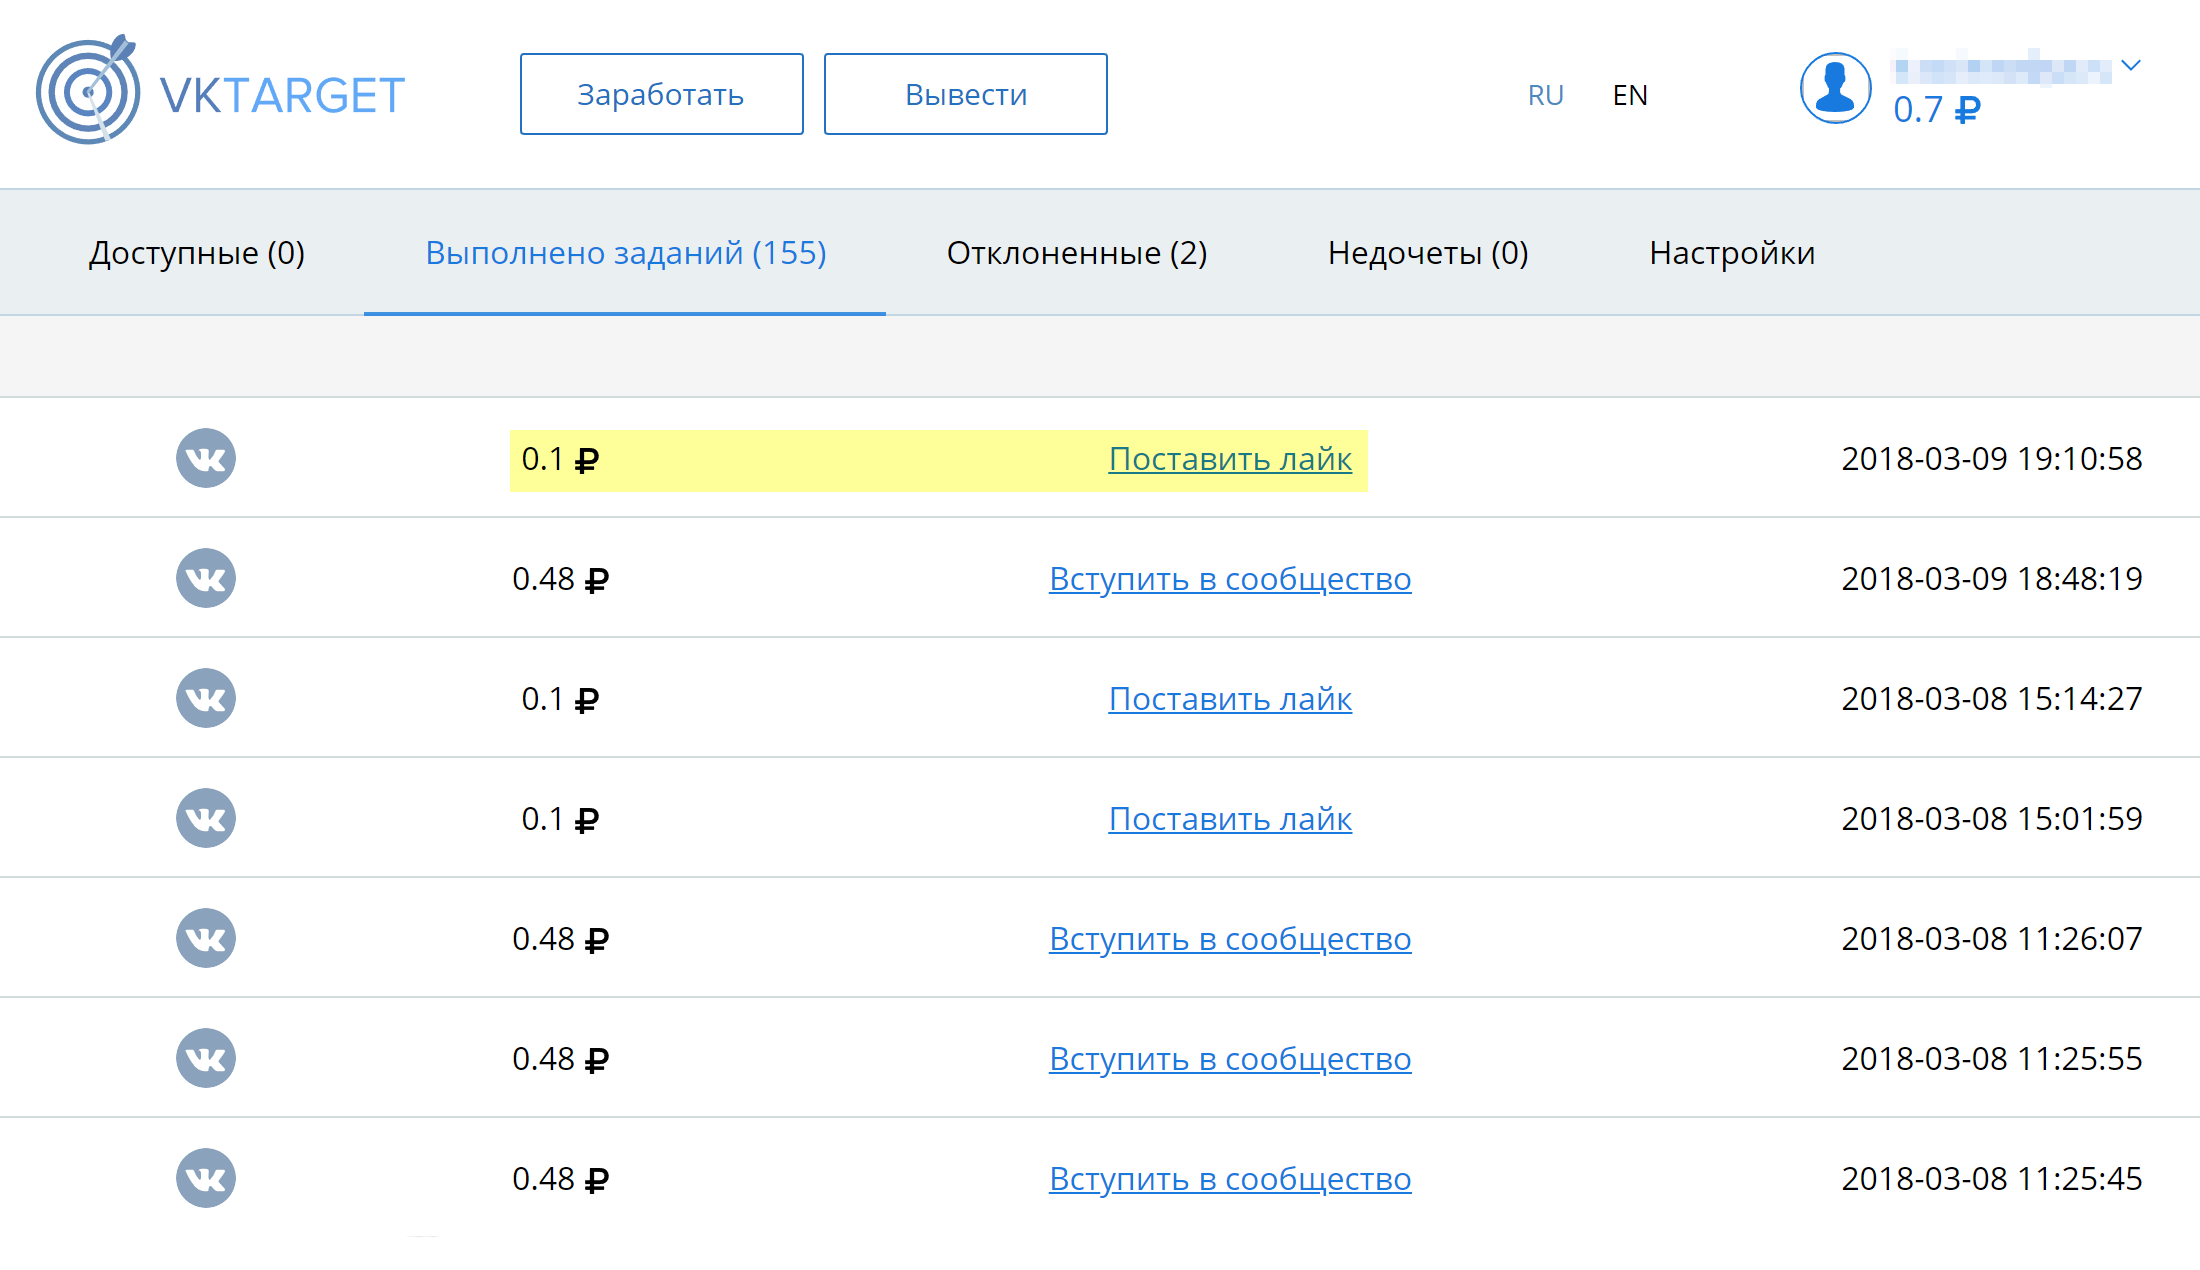 За один лайк записи во «Вконтакте» платят одну копейку. А за подписку на сообщество можно получить почти полрубля